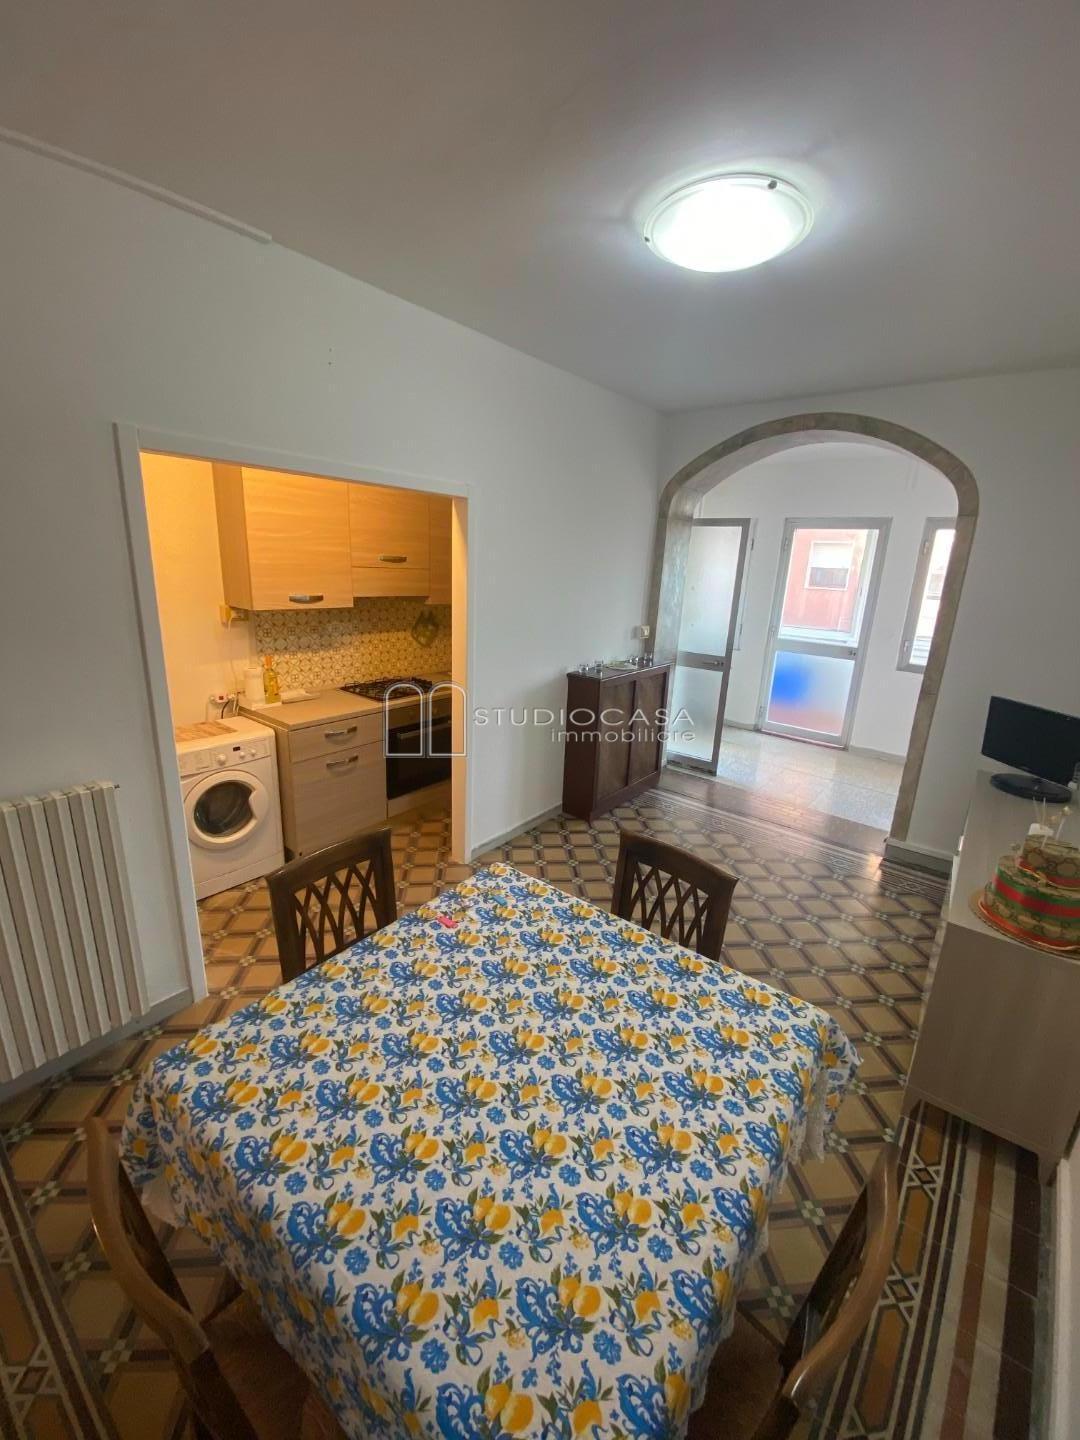 Appartamento in vendita a Pisa, 6 locali, prezzo € 390.000 | PortaleAgenzieImmobiliari.it